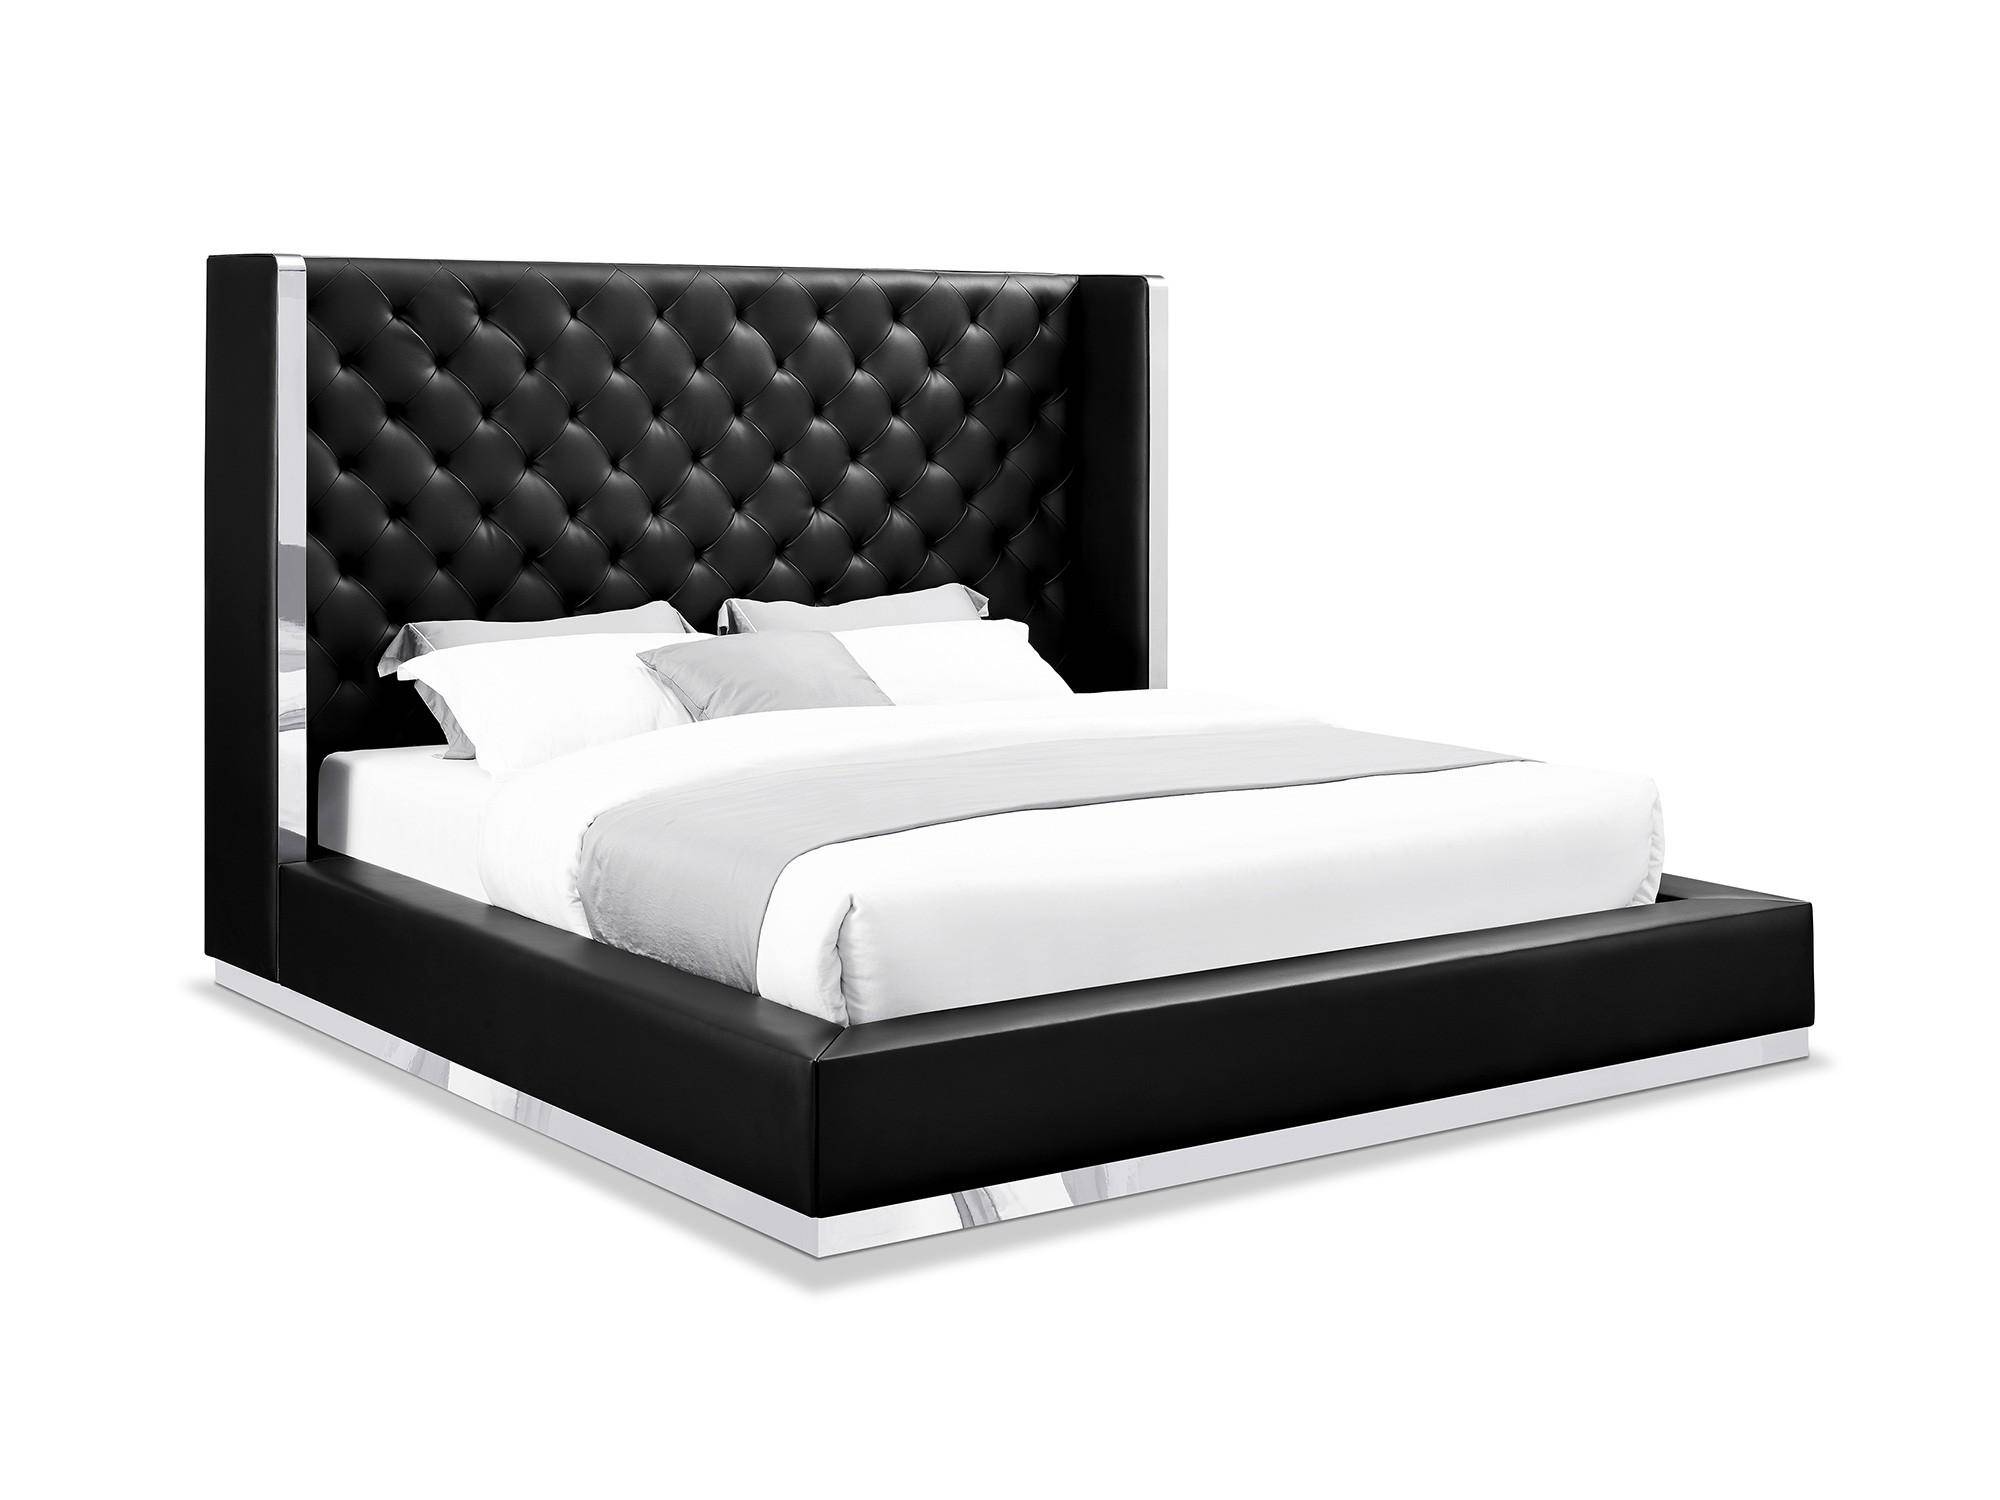 Orren Ellis Aesara Queen Platform, Black Leather Bedroom Sets Queen